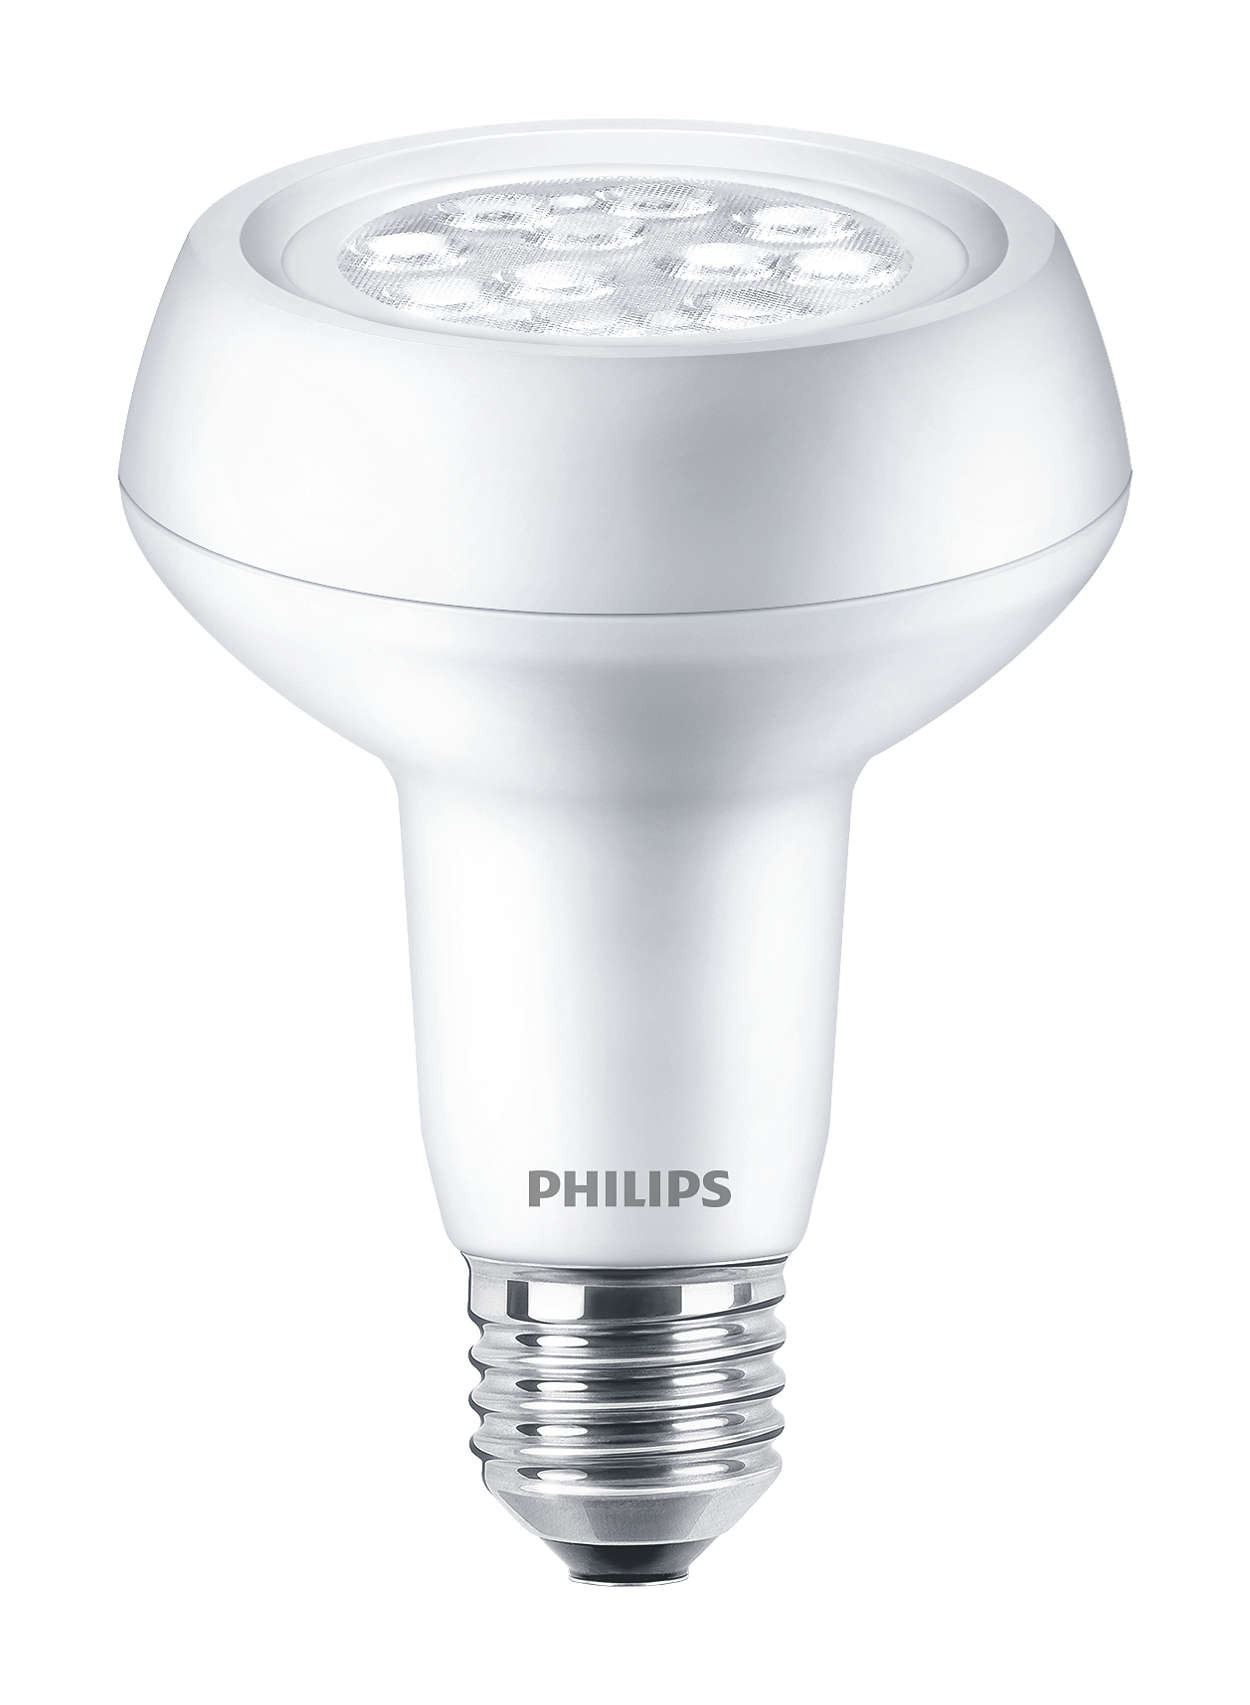 Philips CorePro LEDspot R63 5.7-60W E27 827 36D DIM